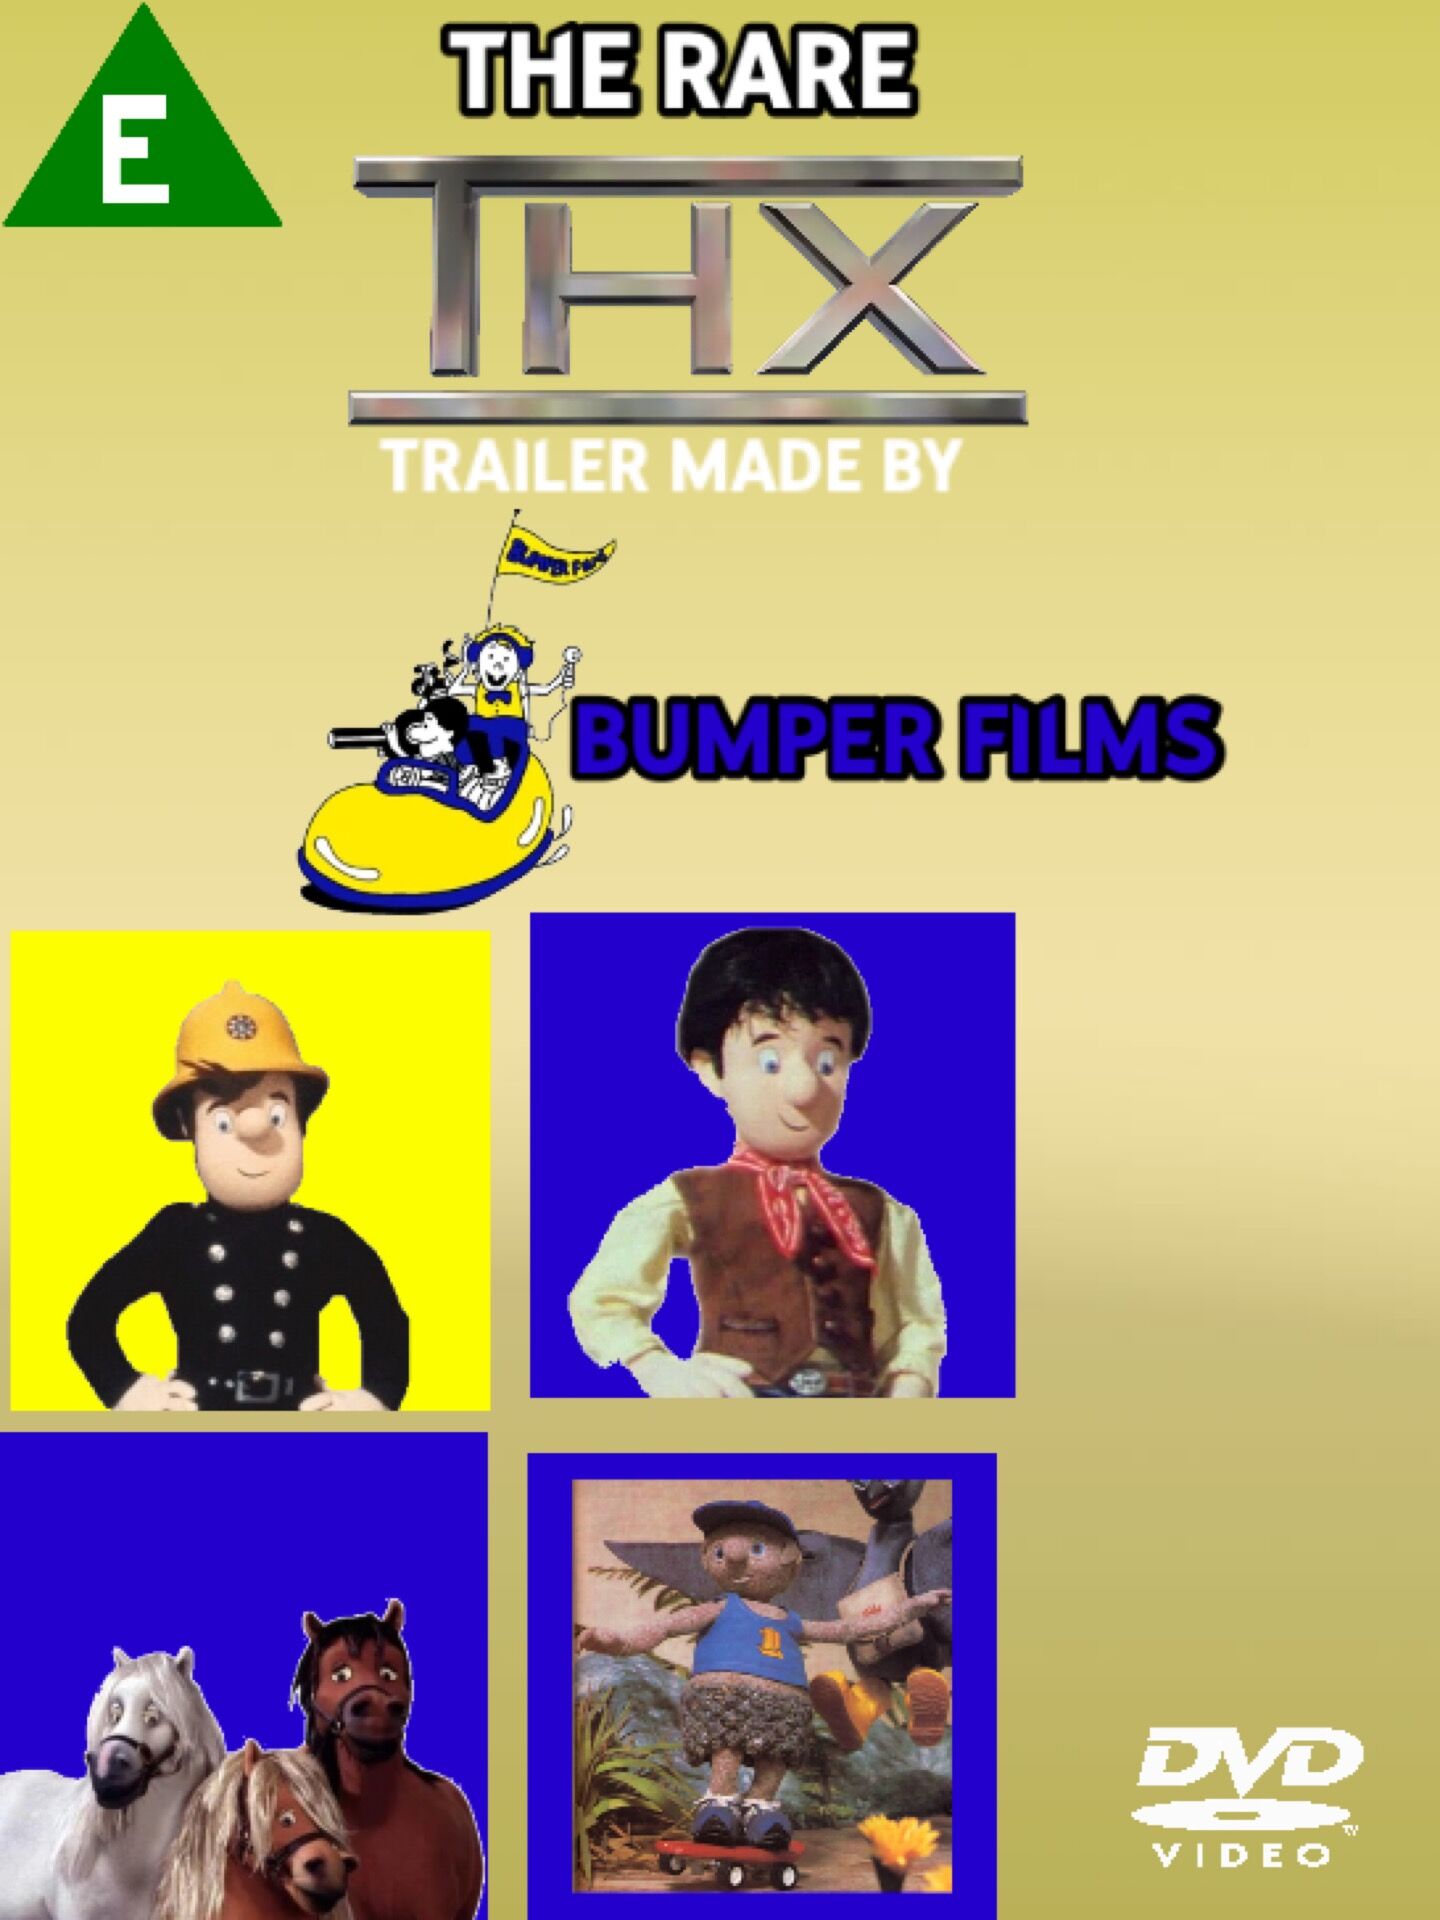 Lost THX “Tex” Trailer: A Bumper Films DVD Boxset | Creepypasta 